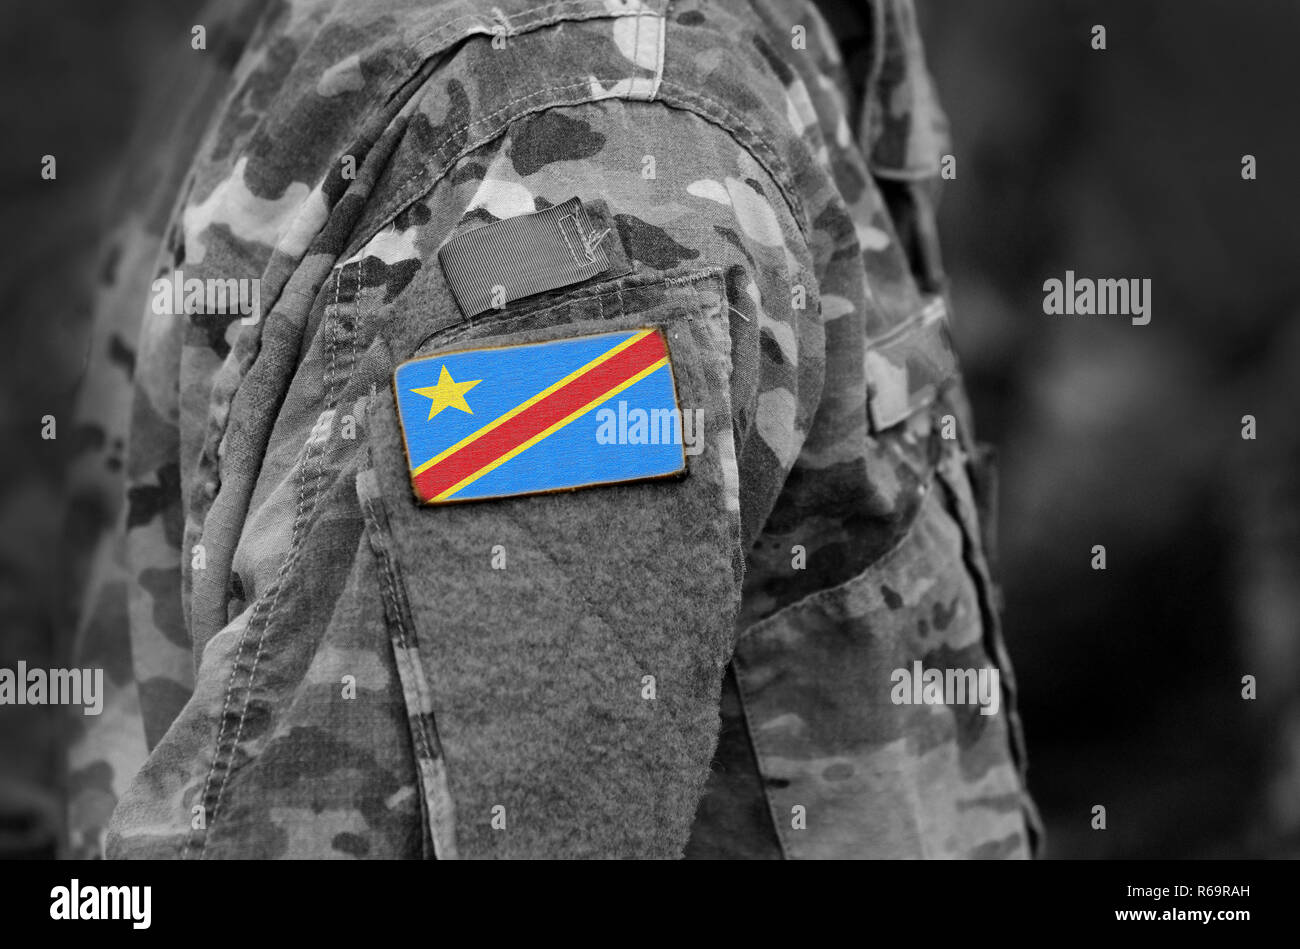 República Democrática del Congo la bandera de los soldados del brazo. Ejército, tropas, militares, África (collage). Foto de stock